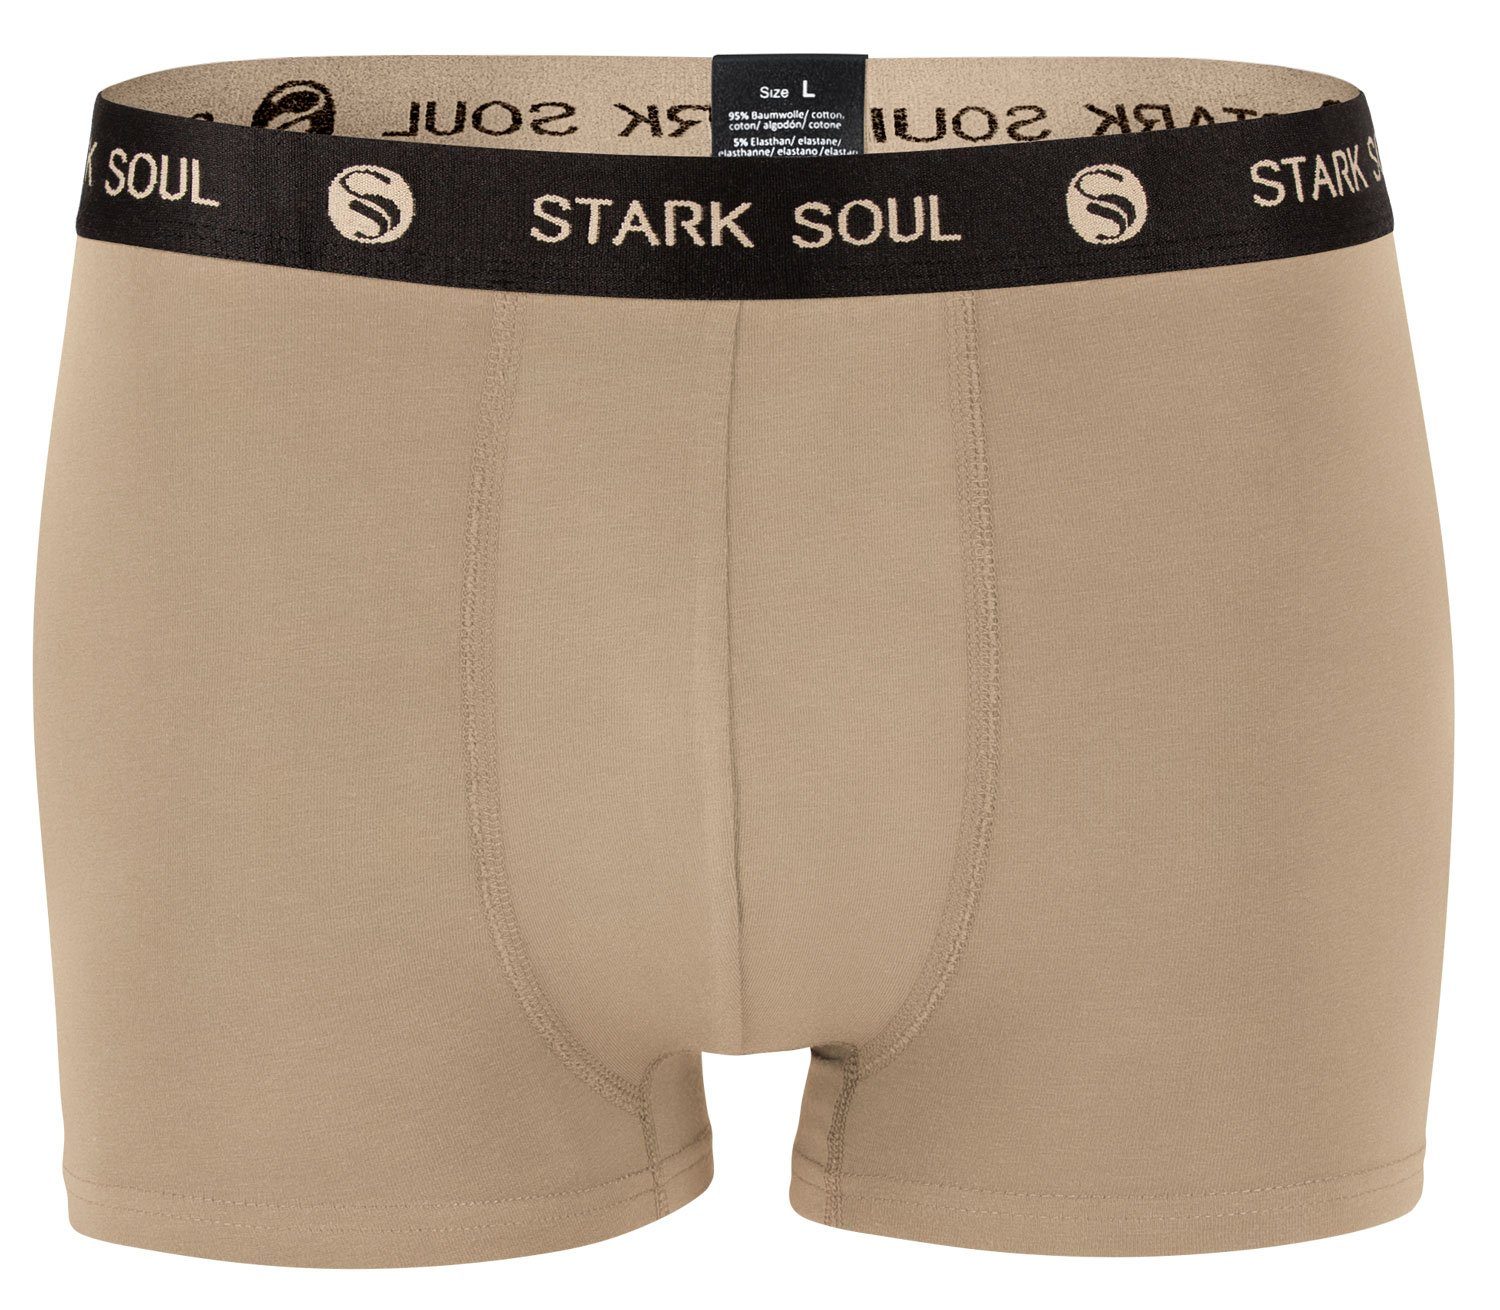 Stark Soul® Boxershorts Herren 6er im Baumwoll-Unterhosen Gemischt-V1 6er-Pack Boxershorts, Pack, Hipster